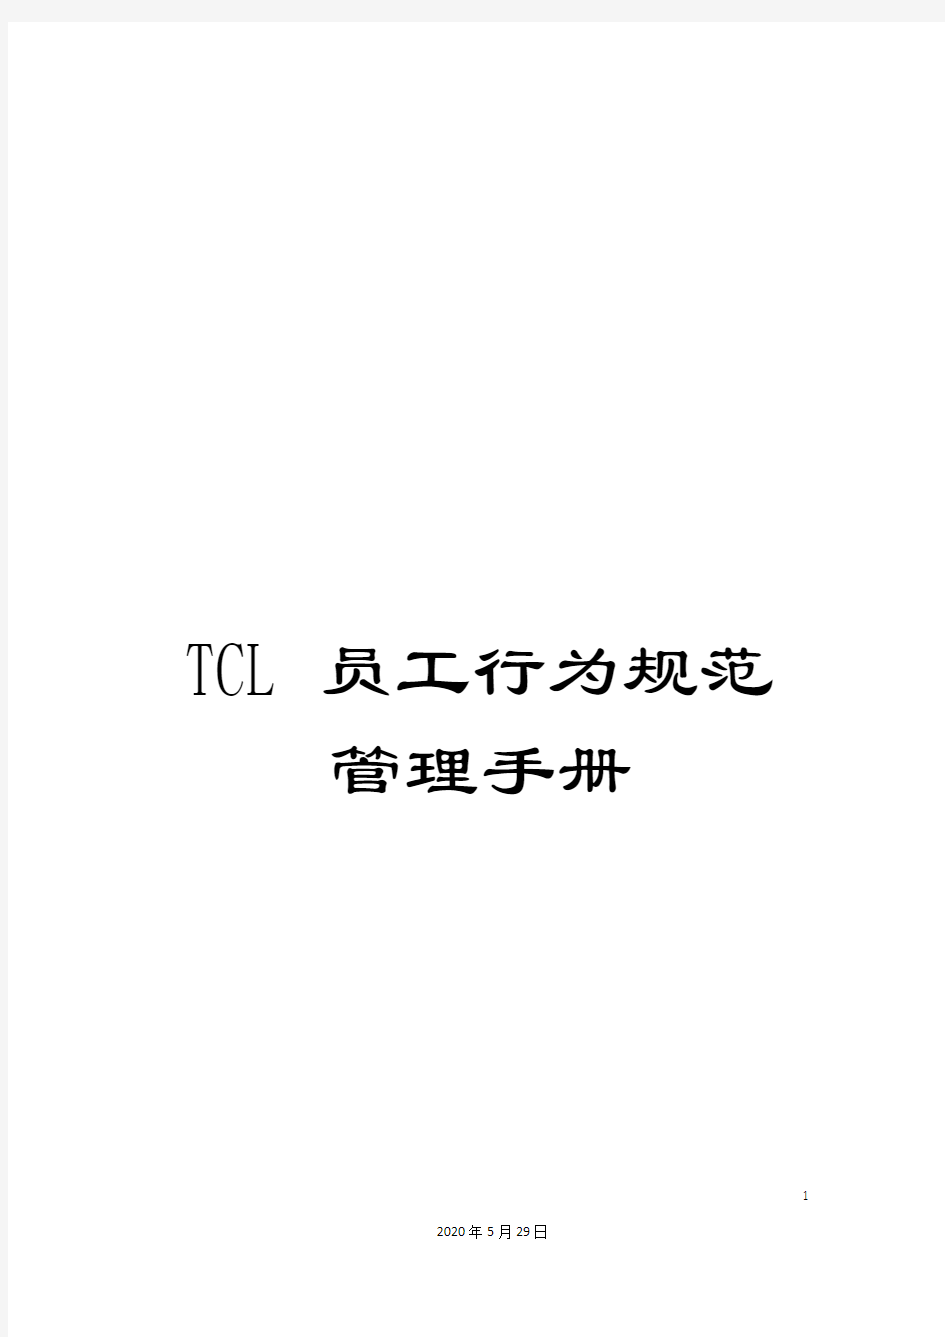 TCL员工行为规范管理手册